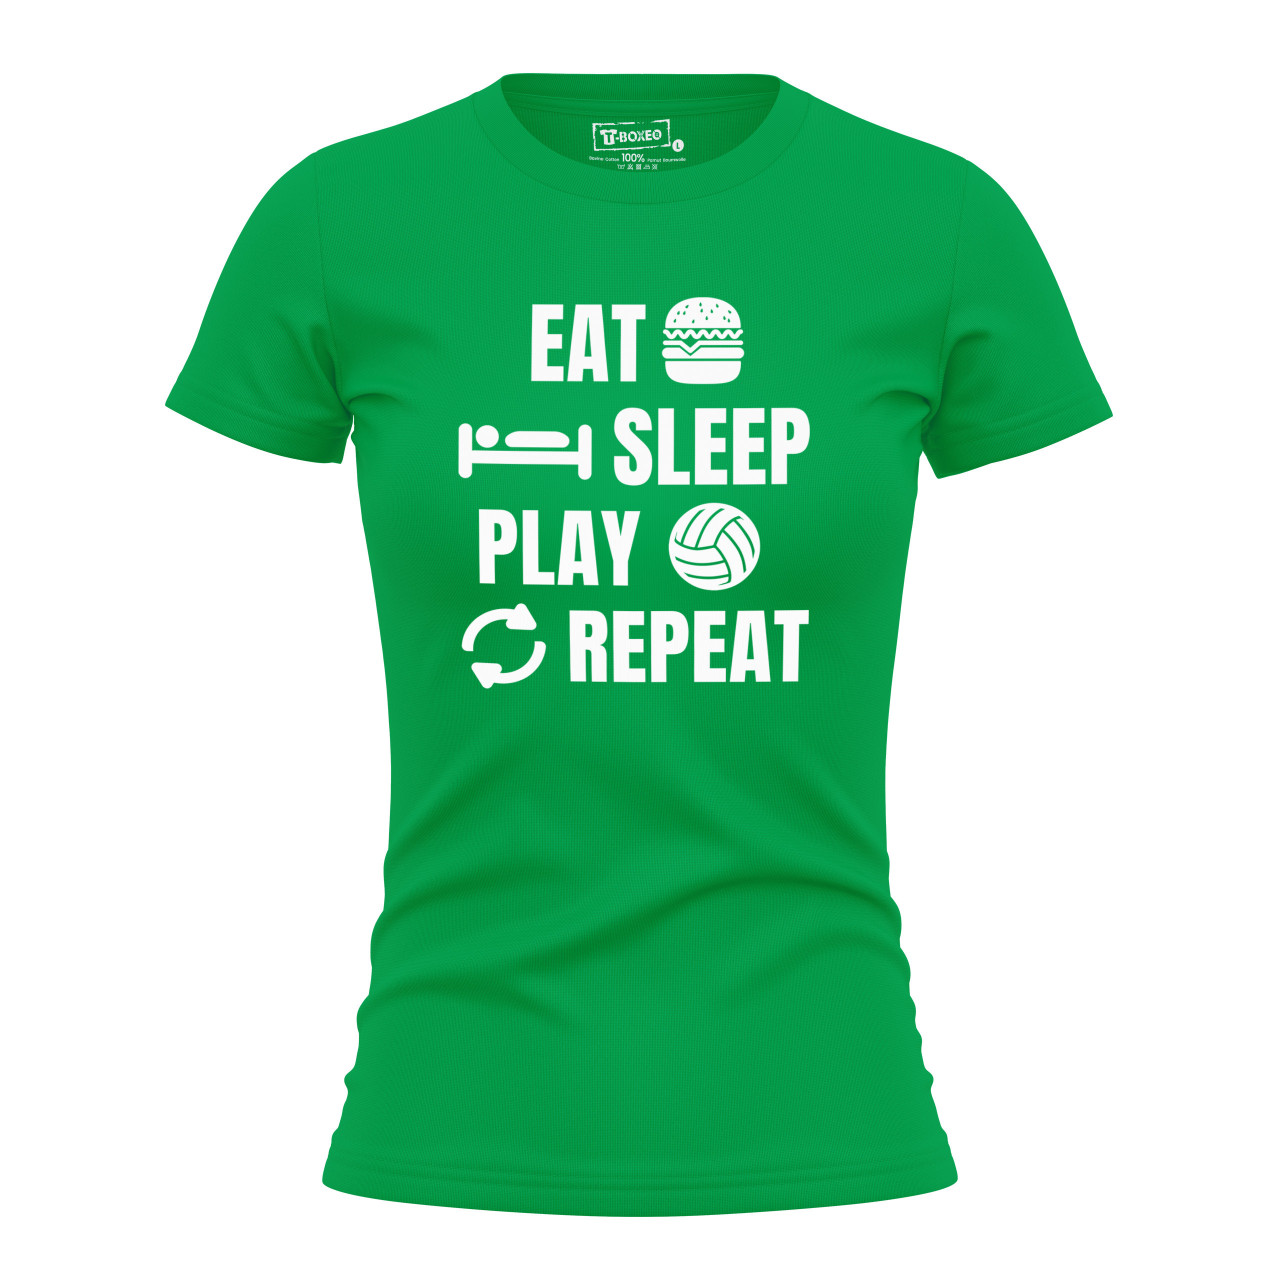 Dámské tričko s potiskem "Eat, sleep, Volleyball"